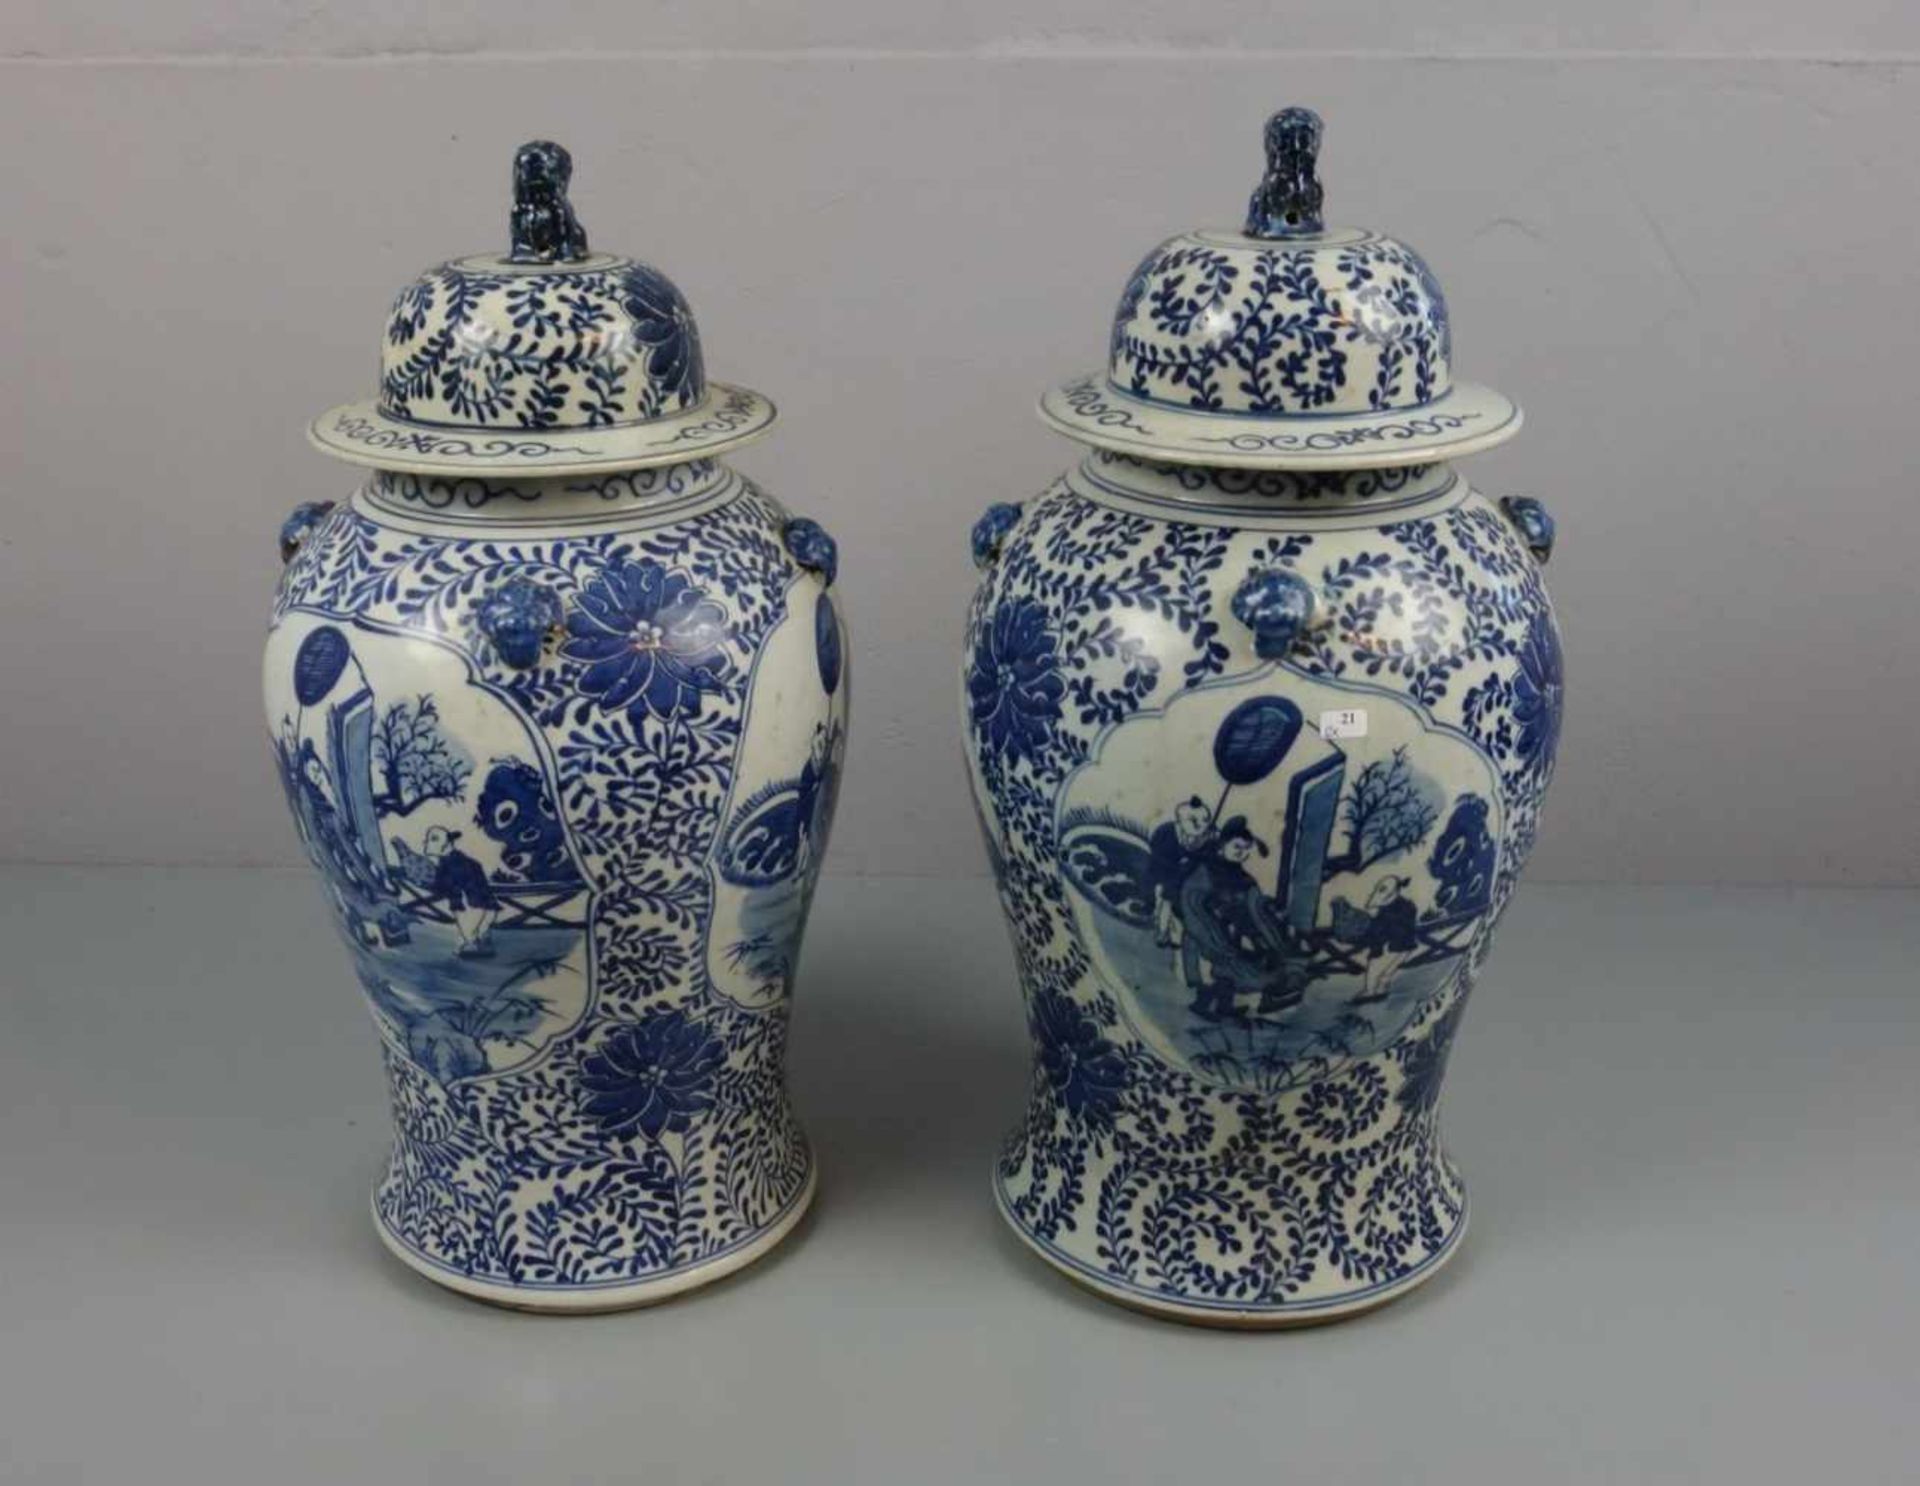 PAAR CHINESISCHE DECKELVASEN, Porzellan (ungemarkt), späte Qing-Dynastie / China. Balusterform auf